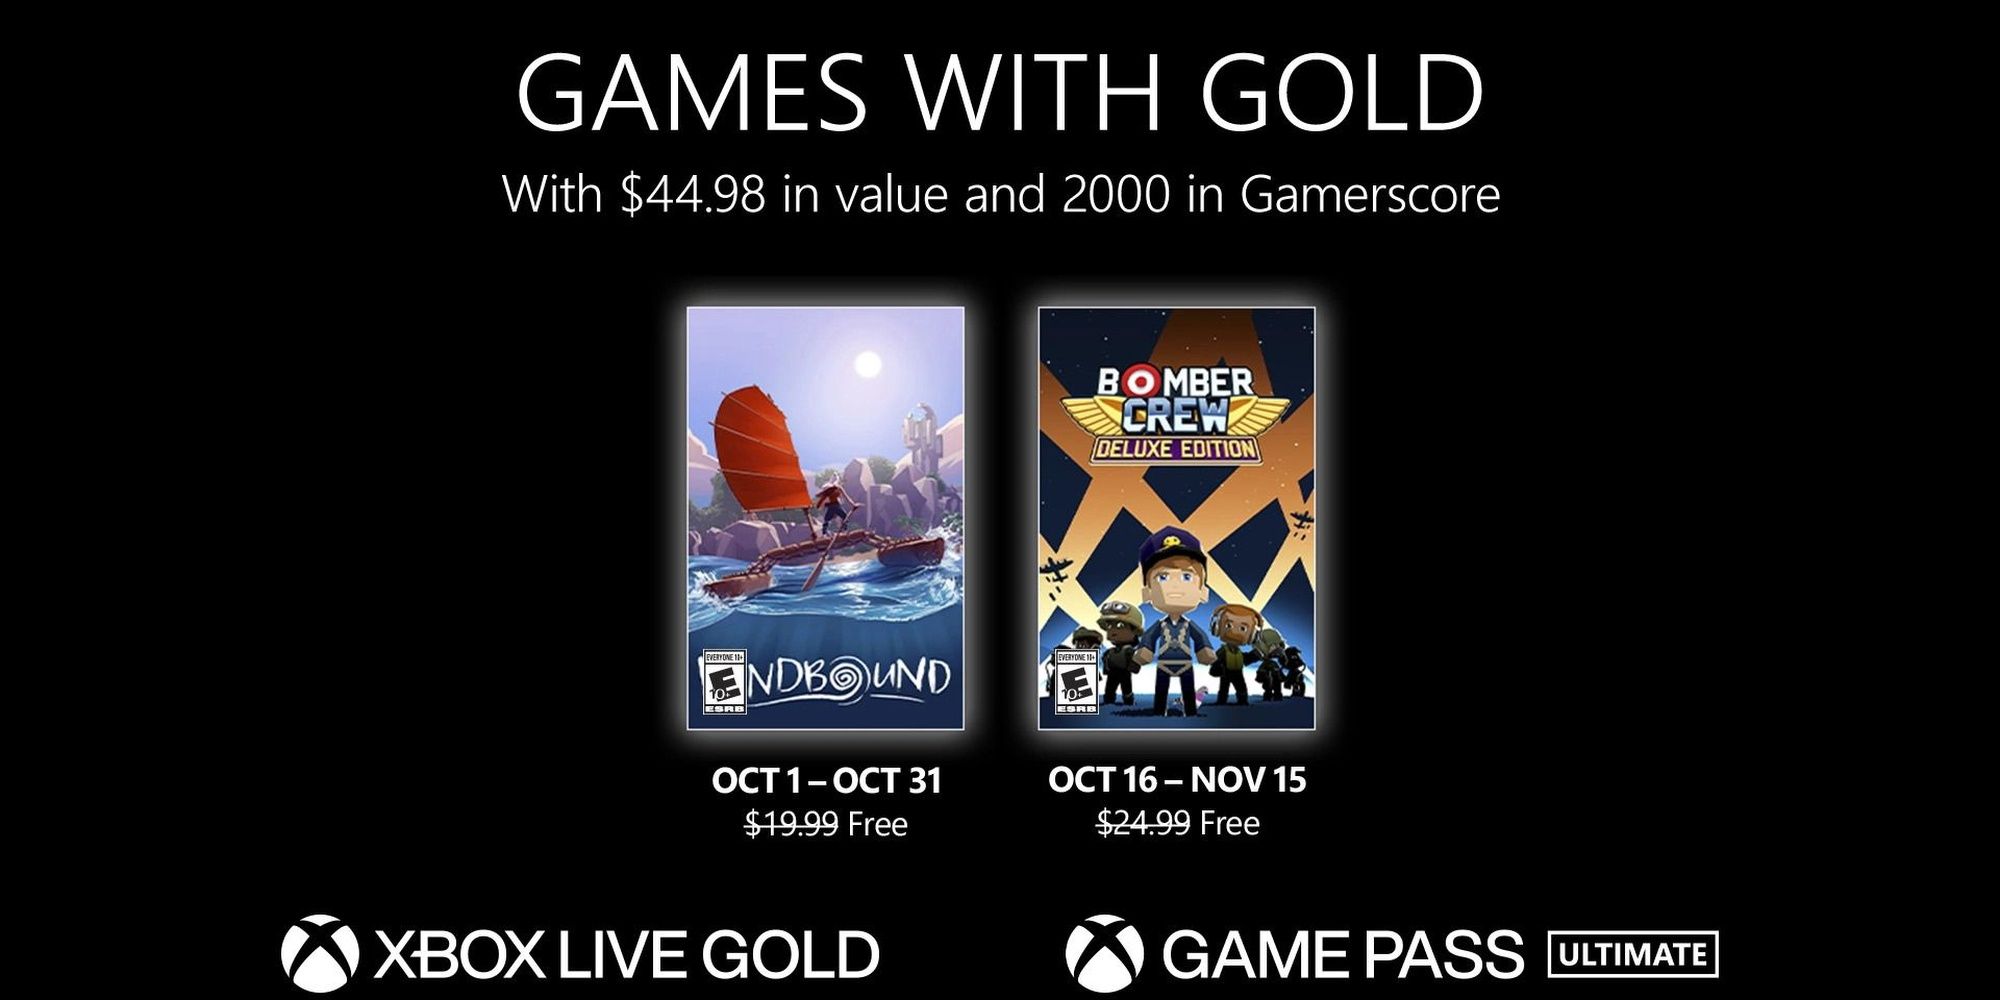 Xbox представляет октябрьские игры с золотом